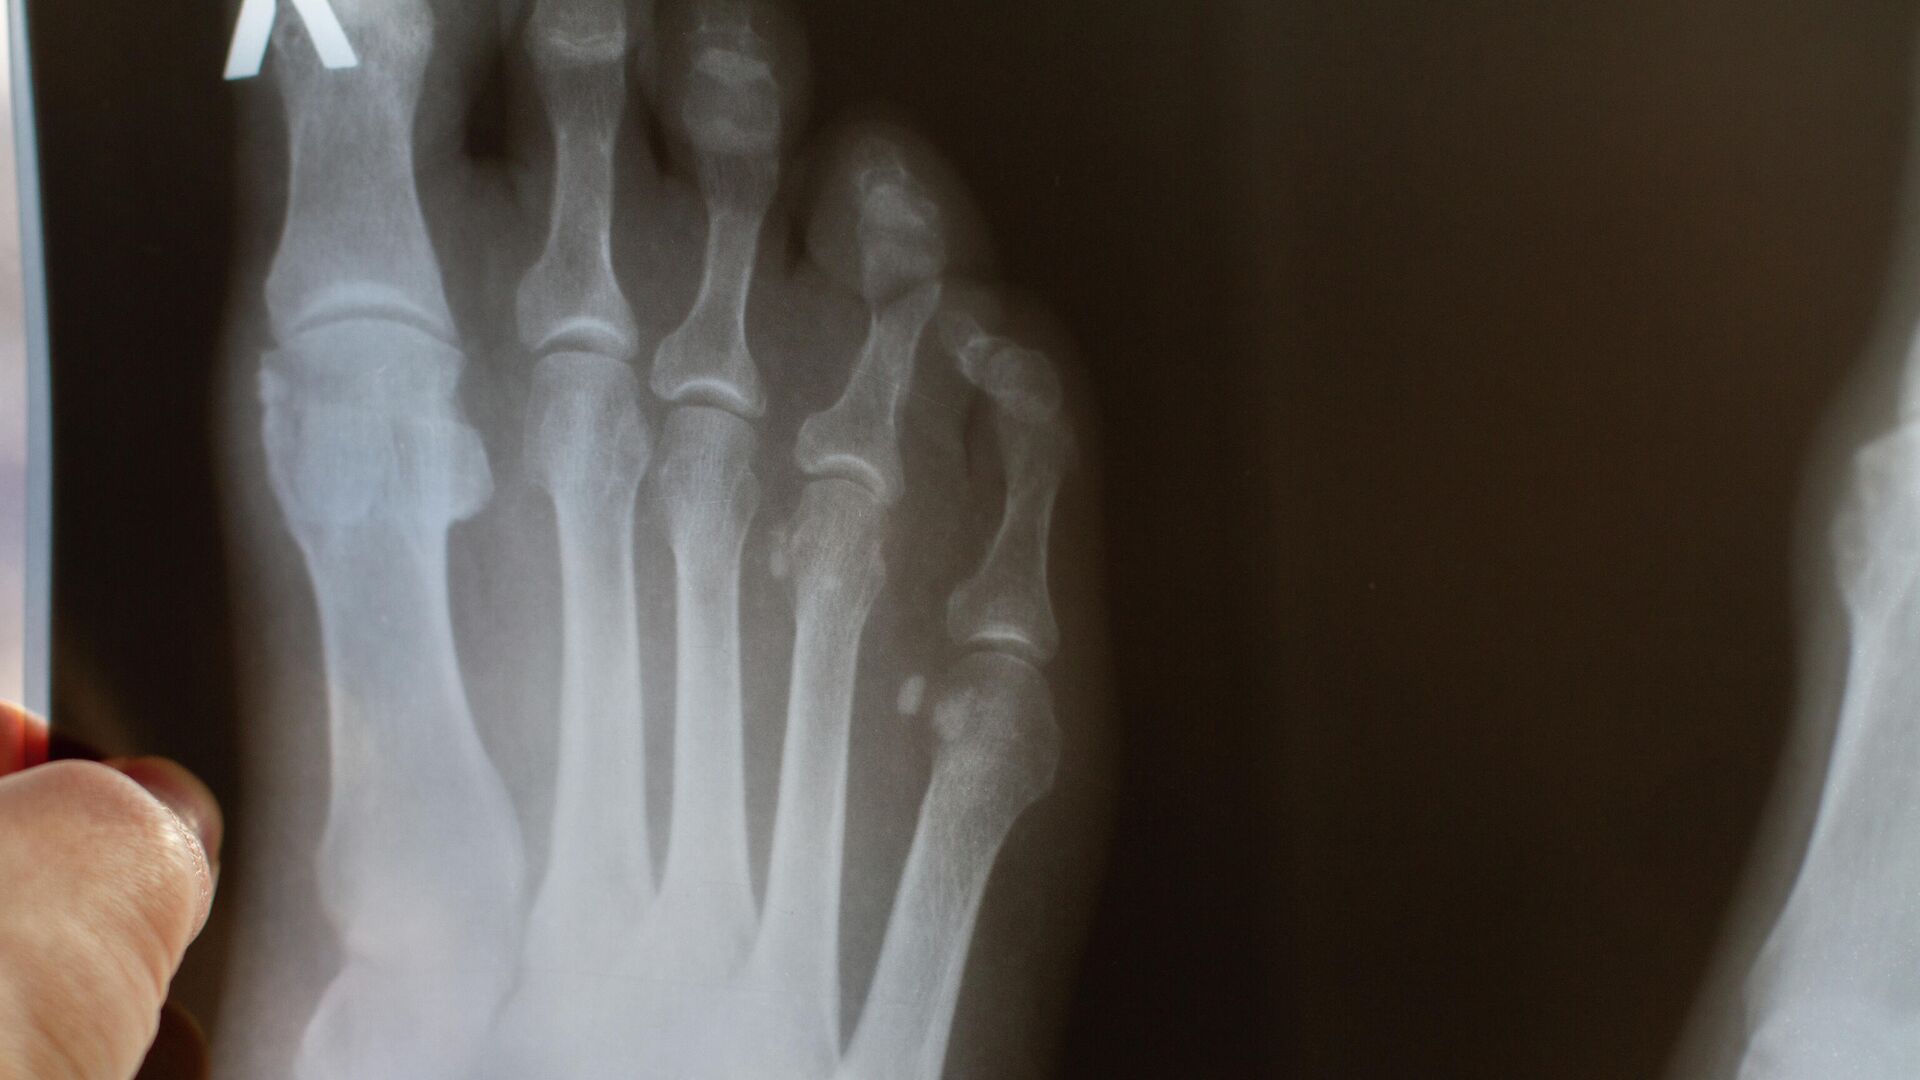 Признаки и симптомы молоткообразной деформации пальцев стопы